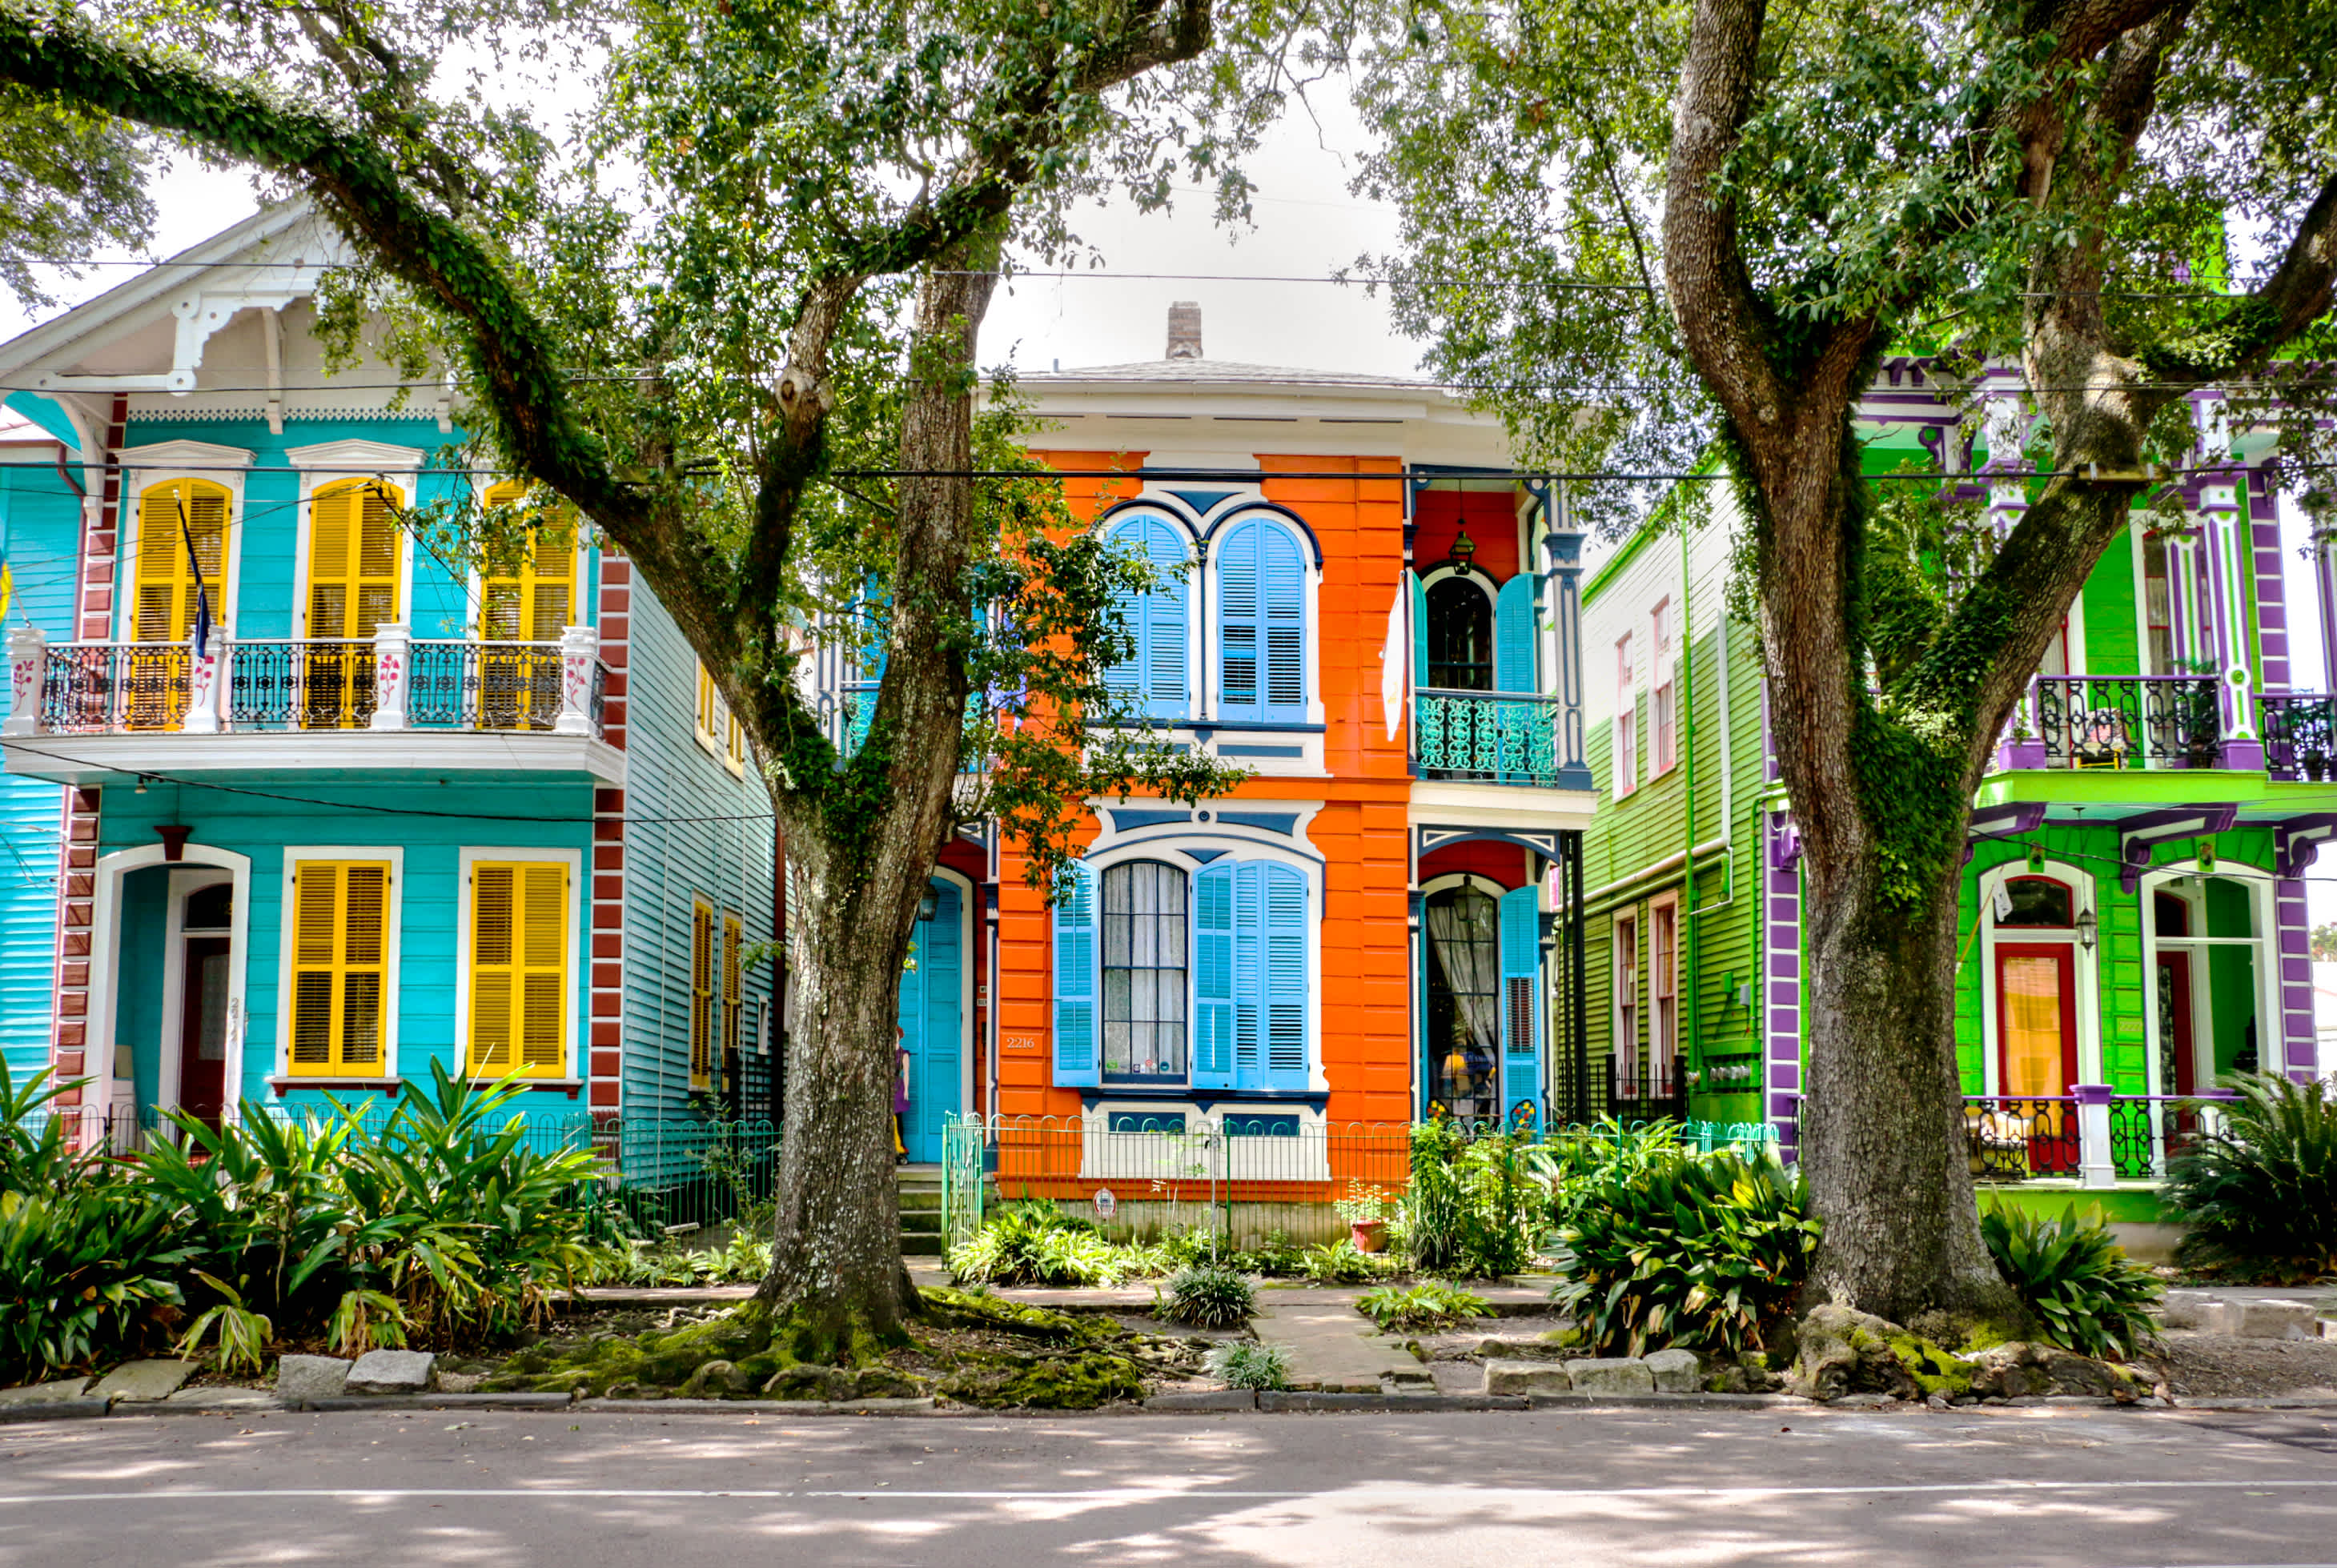 Découvrez des maisons colorées lors d'un voyage à la Nouvelle-Orléans